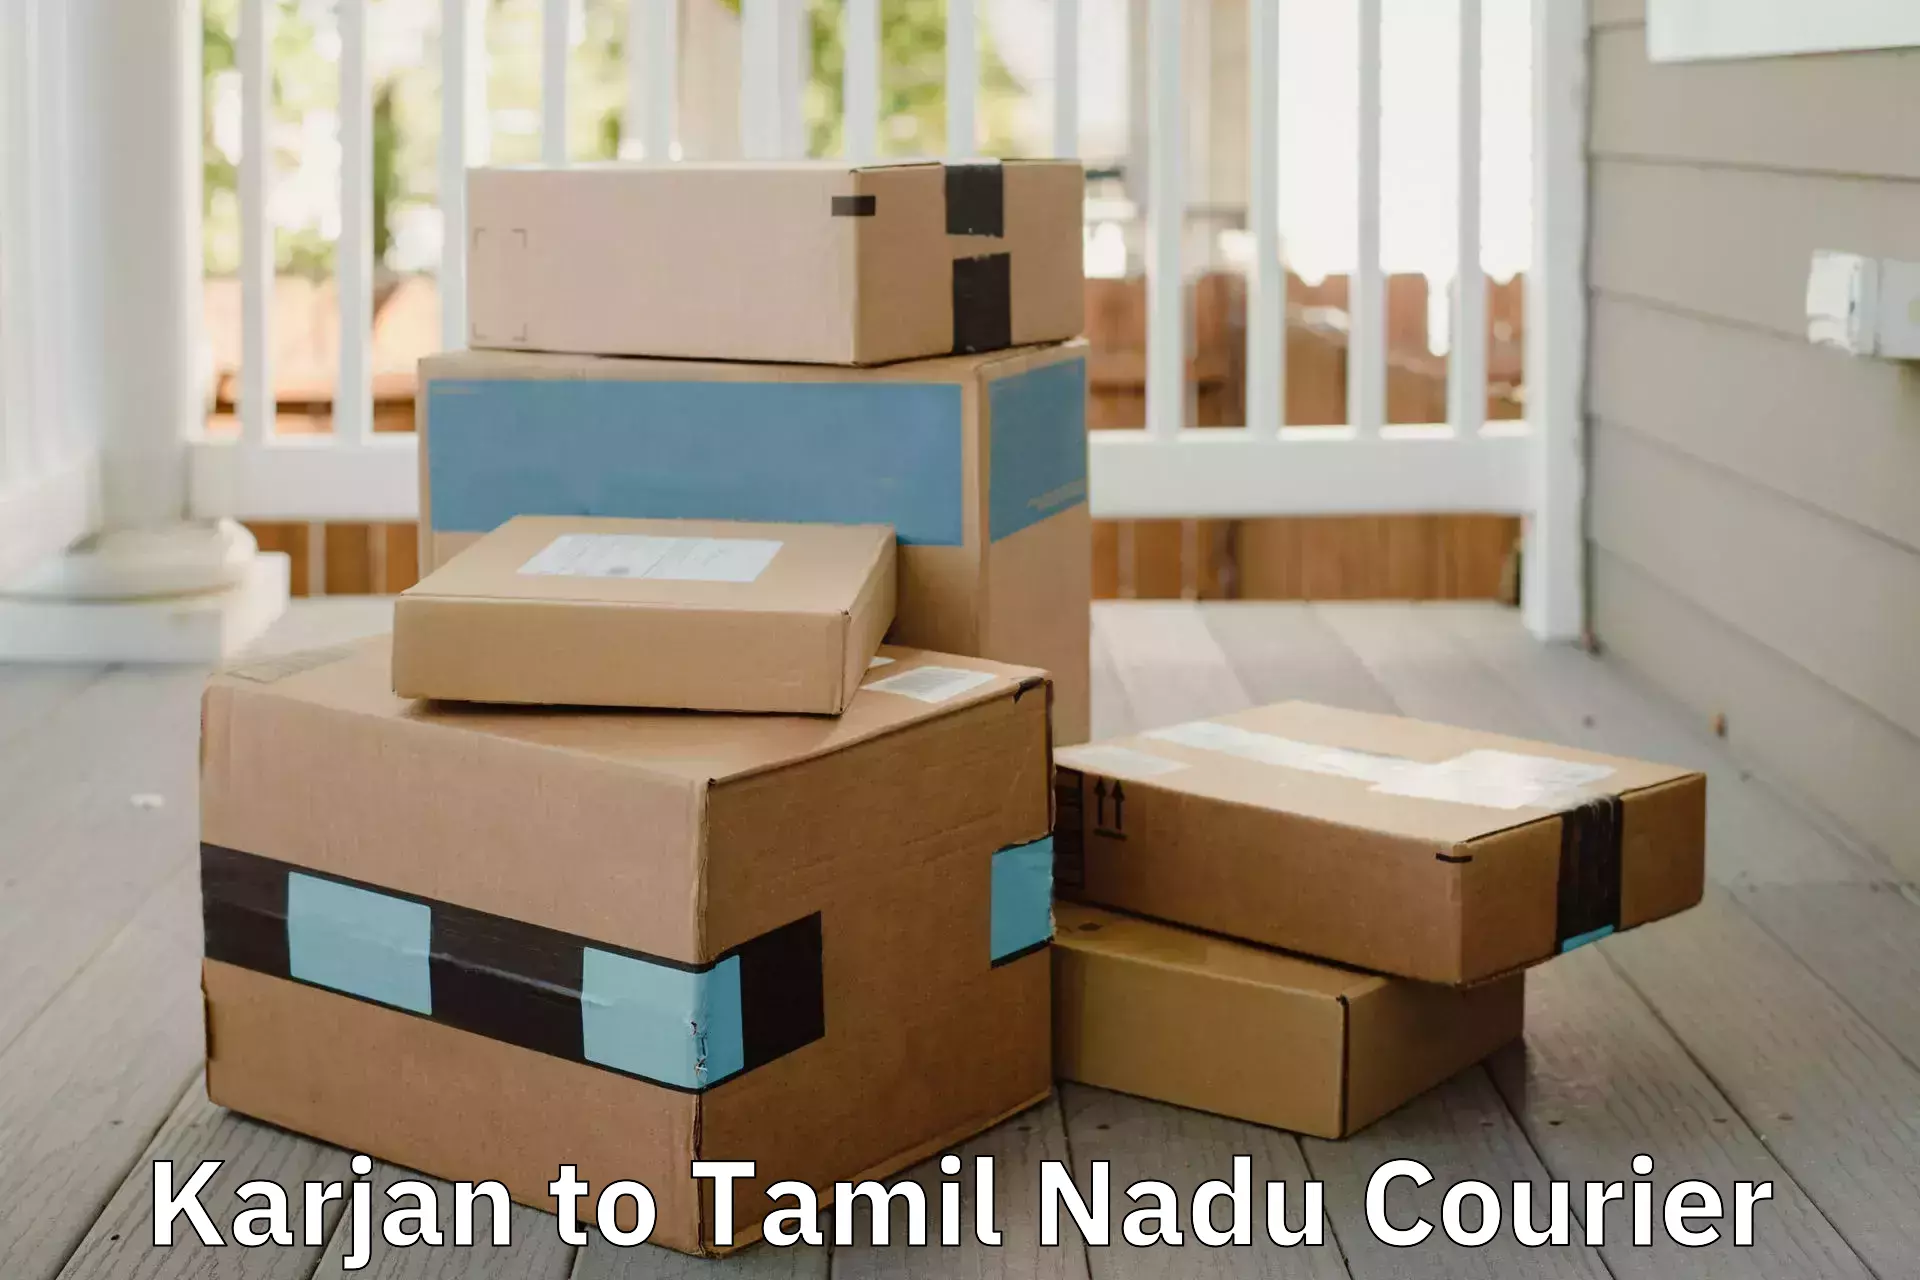 Nationwide household movers in Karjan to Tamil Nadu